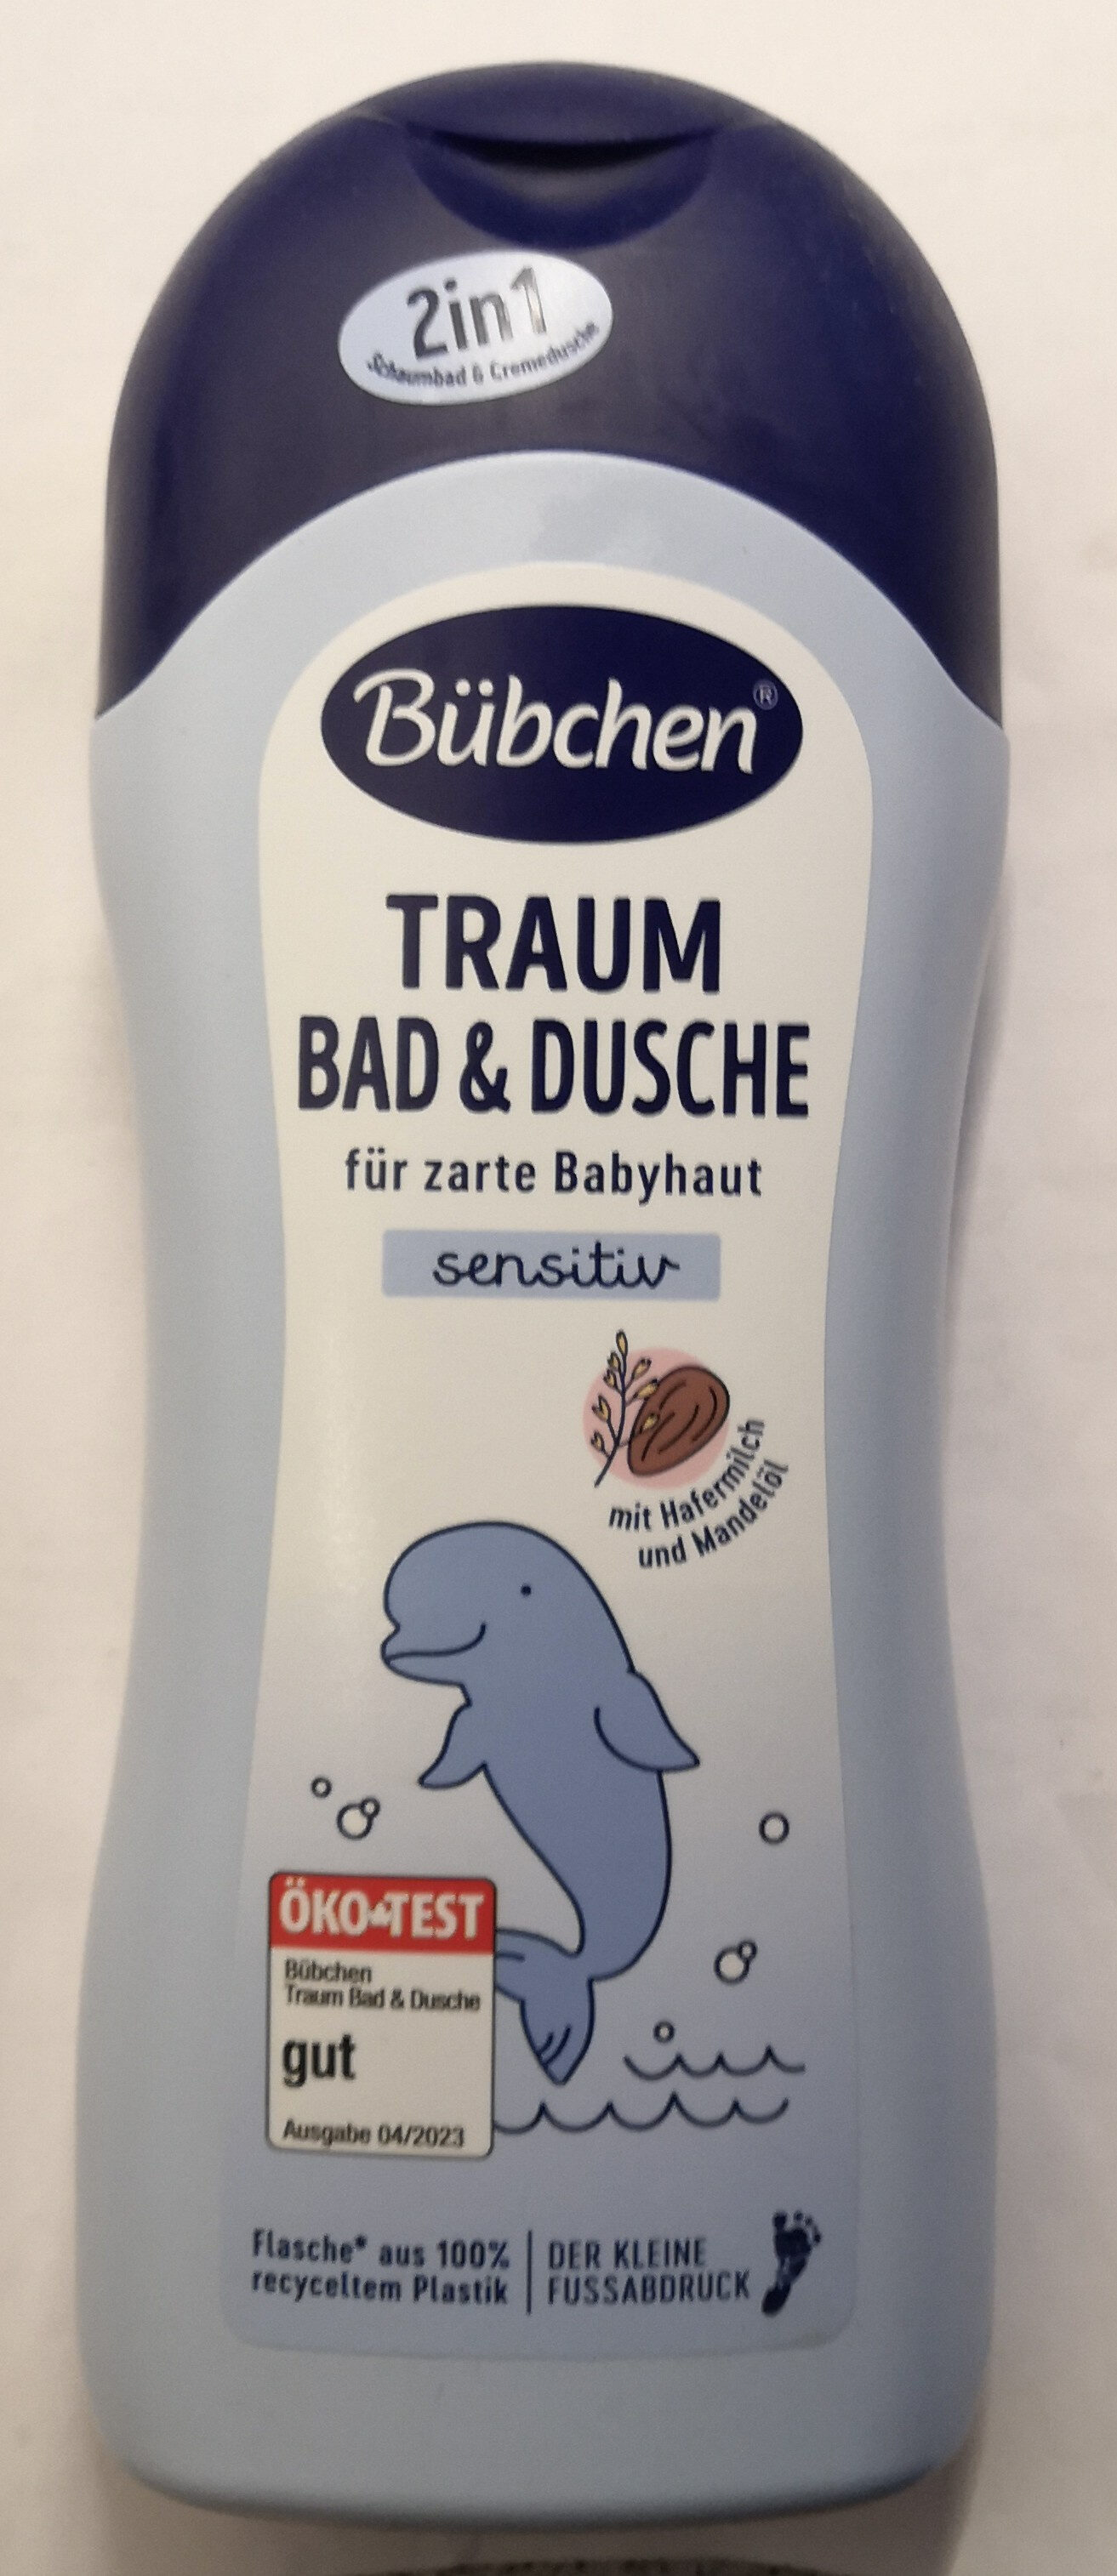 Traum sensitiv Bad & Dusche - Produit - de